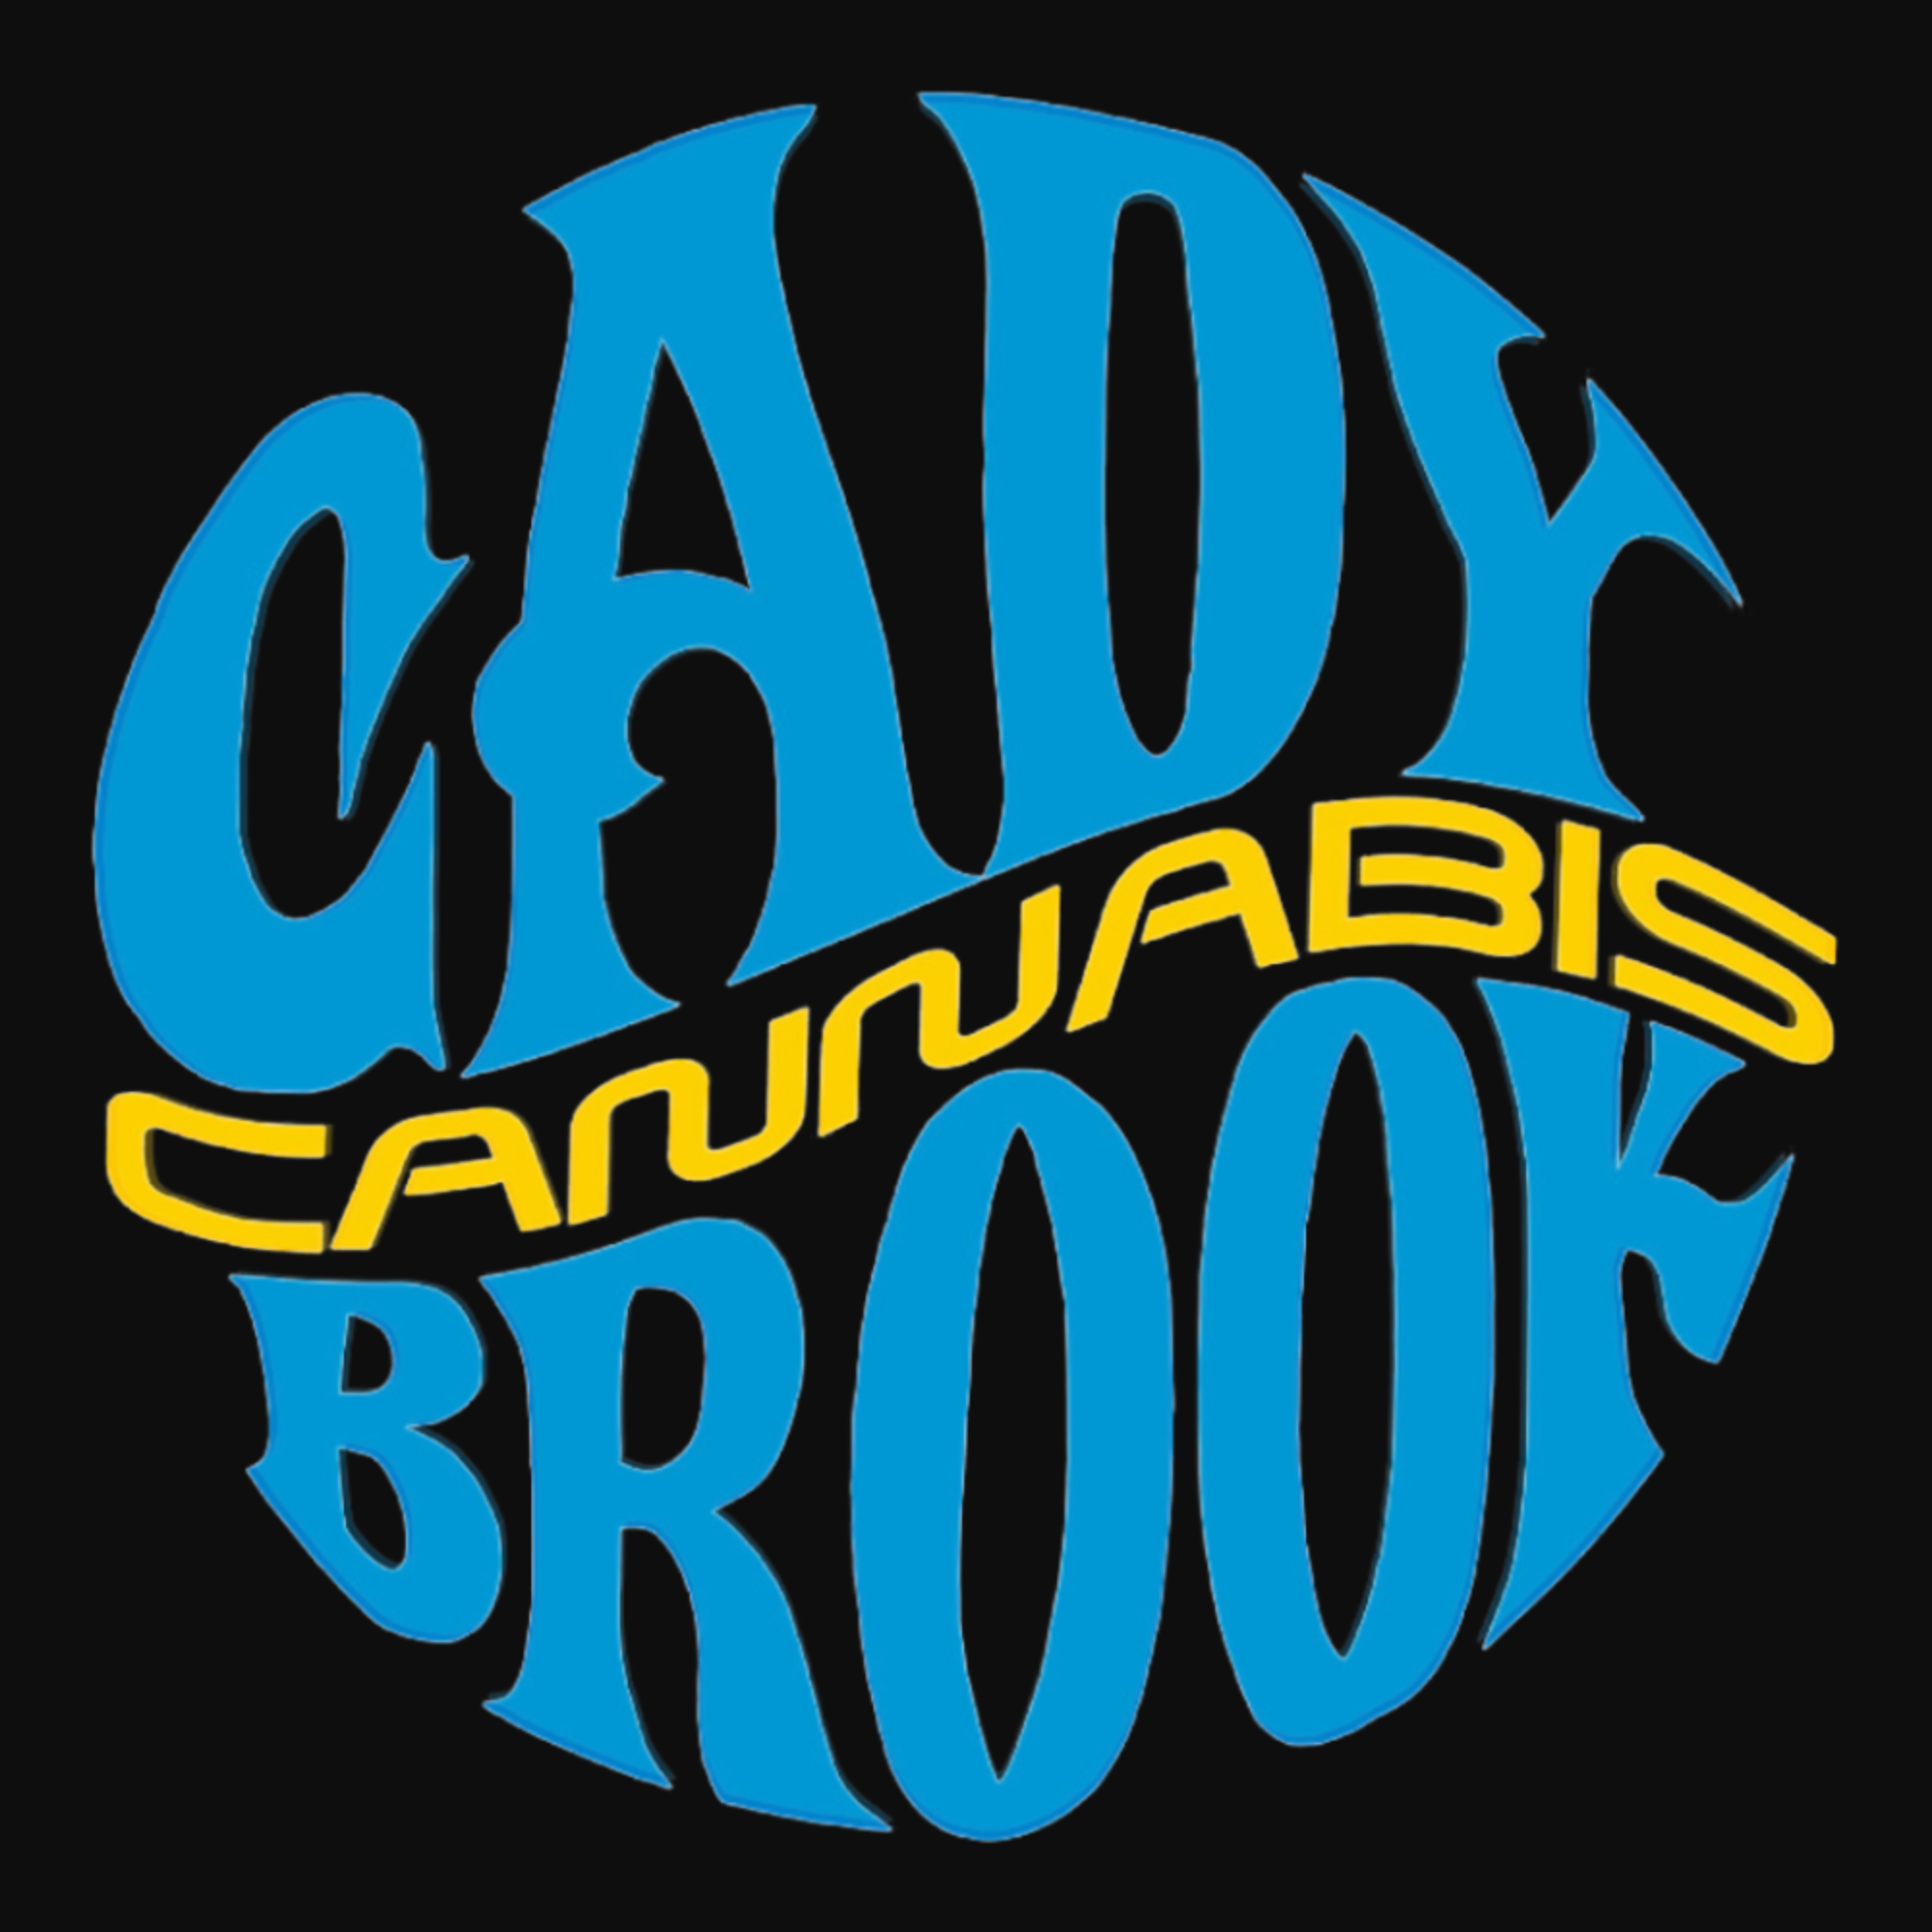 Cady Brook Cannabis | Adult Use logo